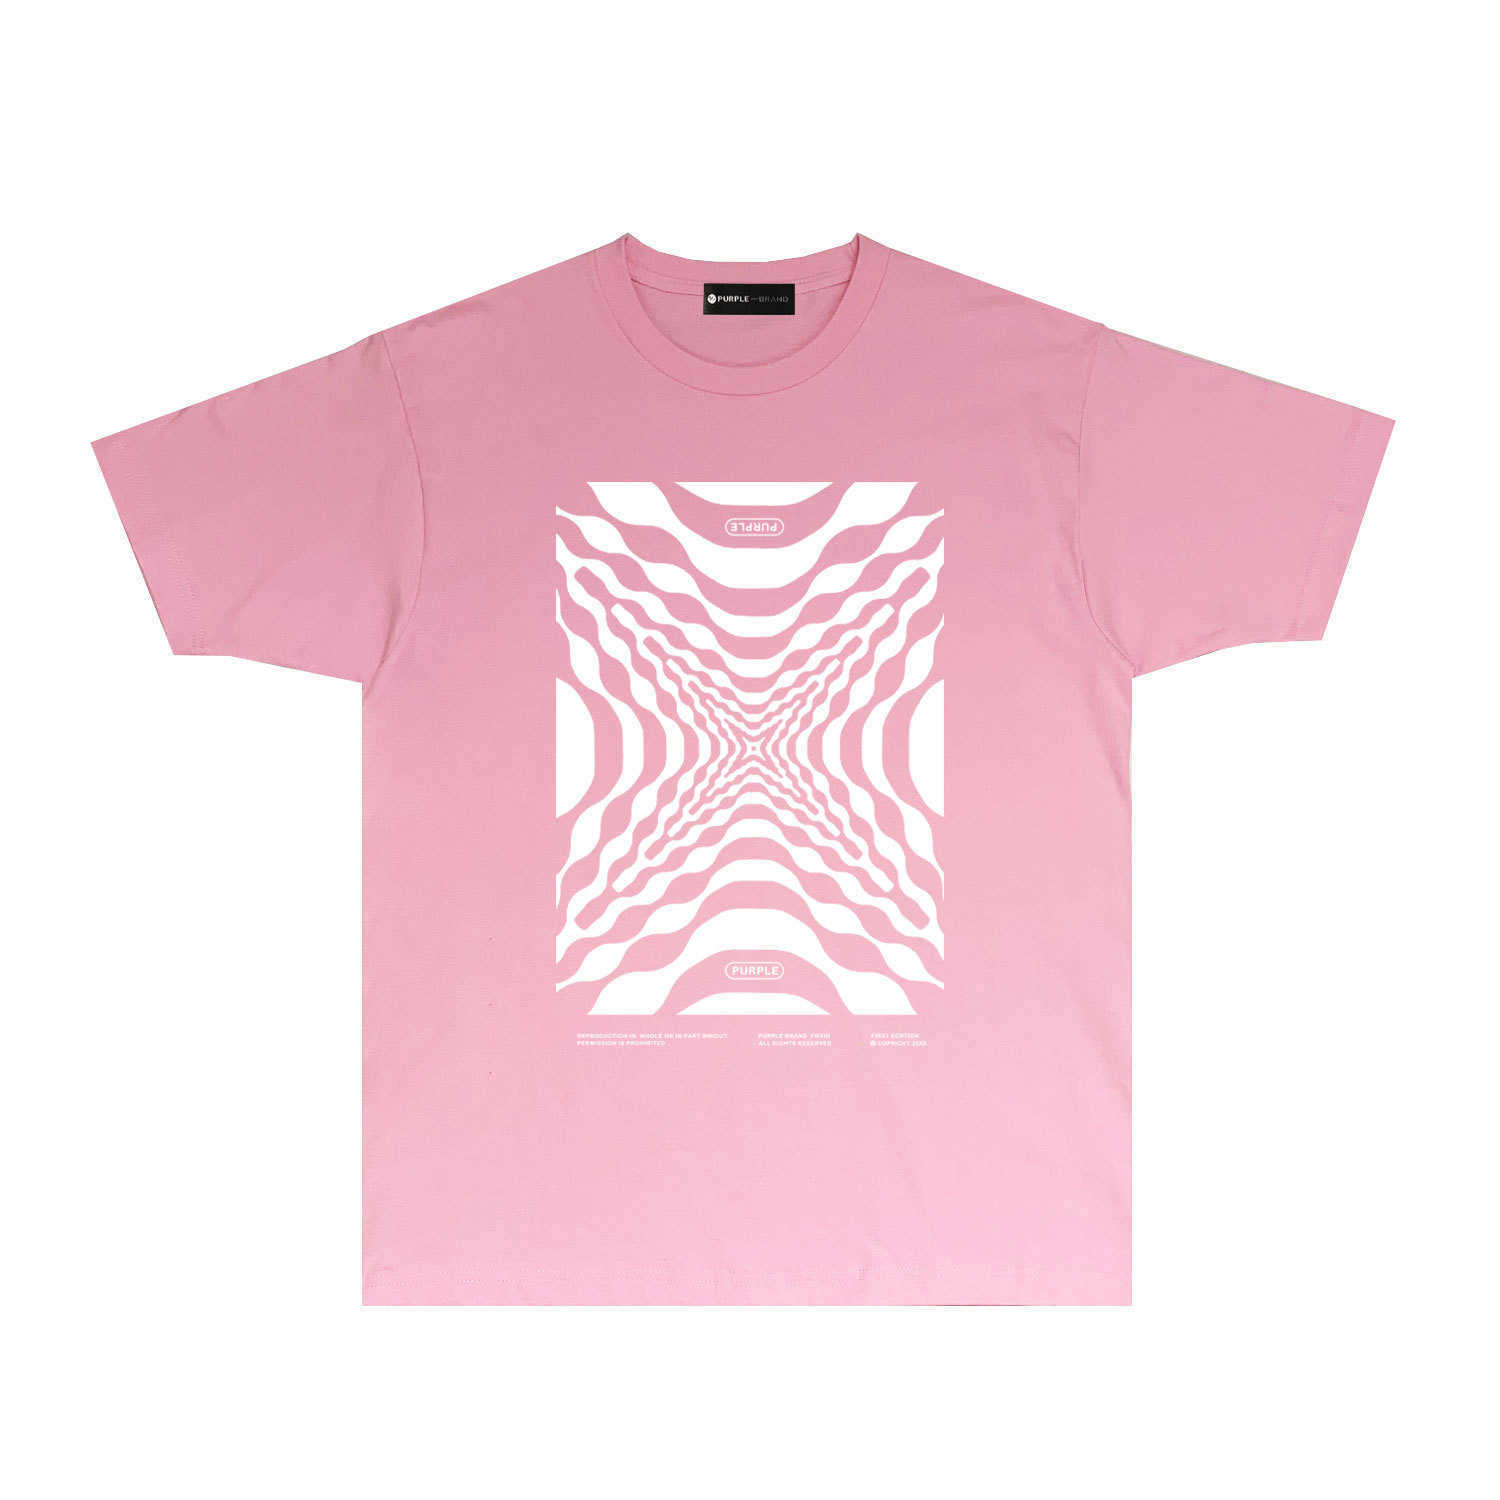 Długotrwałe modne marki fioletowa marka T-shirt z krótkim rękawem koszulka koszulka shirtm7yl